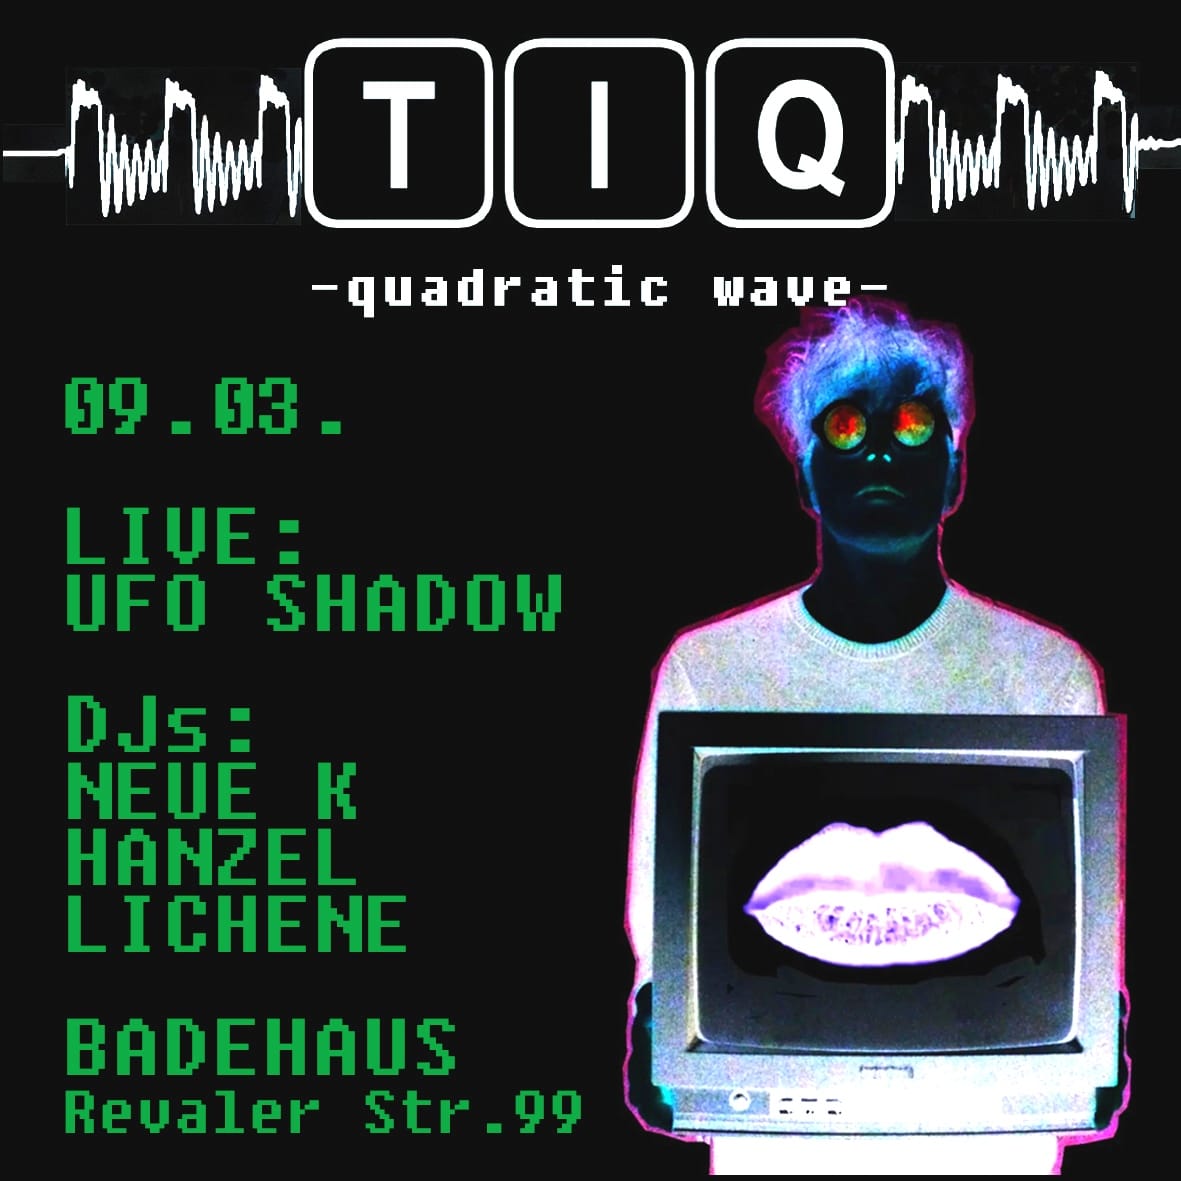 TIQ -quadratic wave-